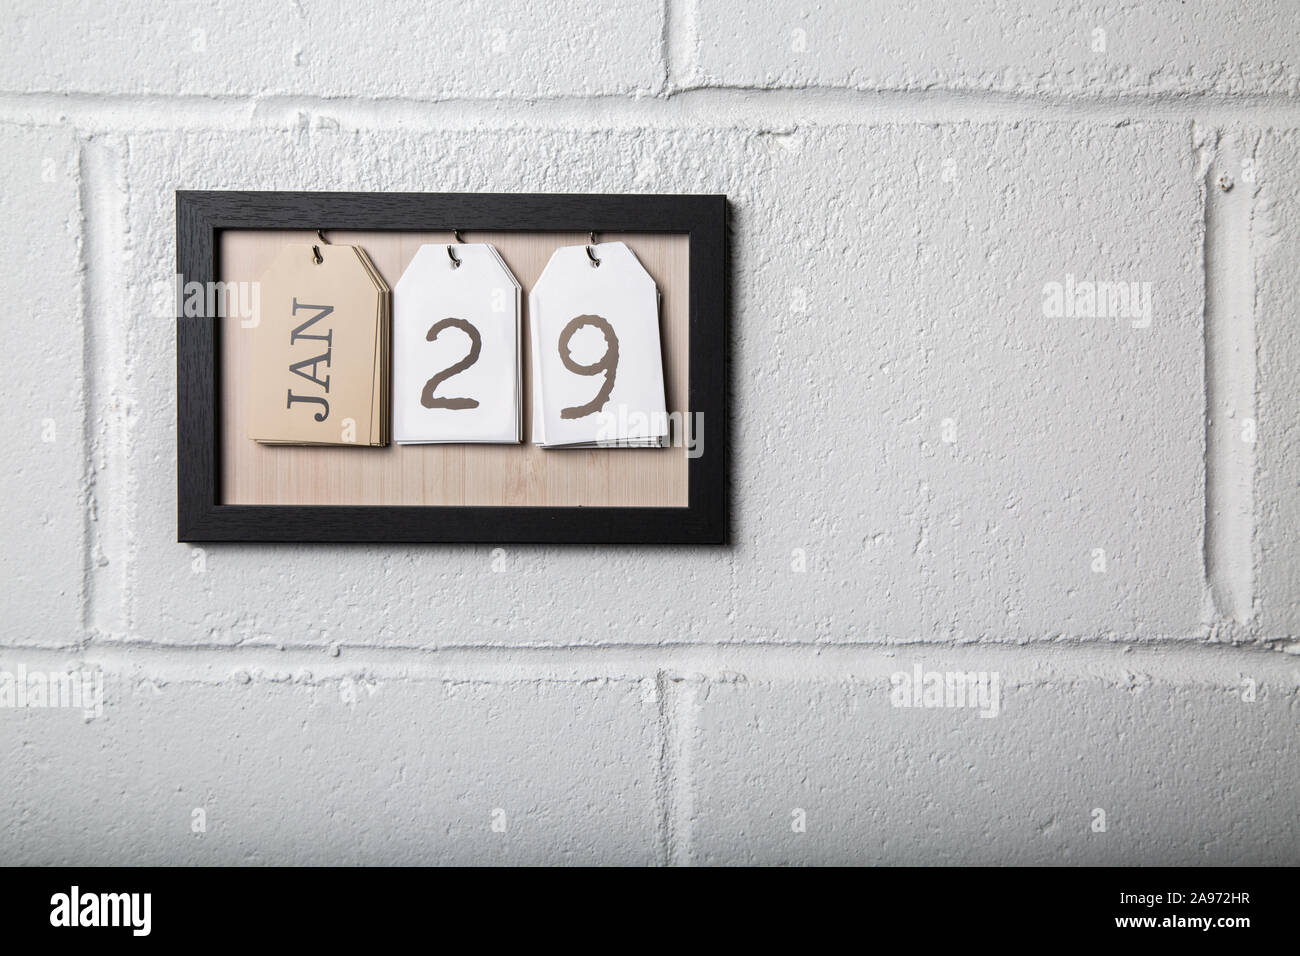 Calendario para colgar en la pared, en un marco de imagen mostrando el 29 de enero Foto de stock